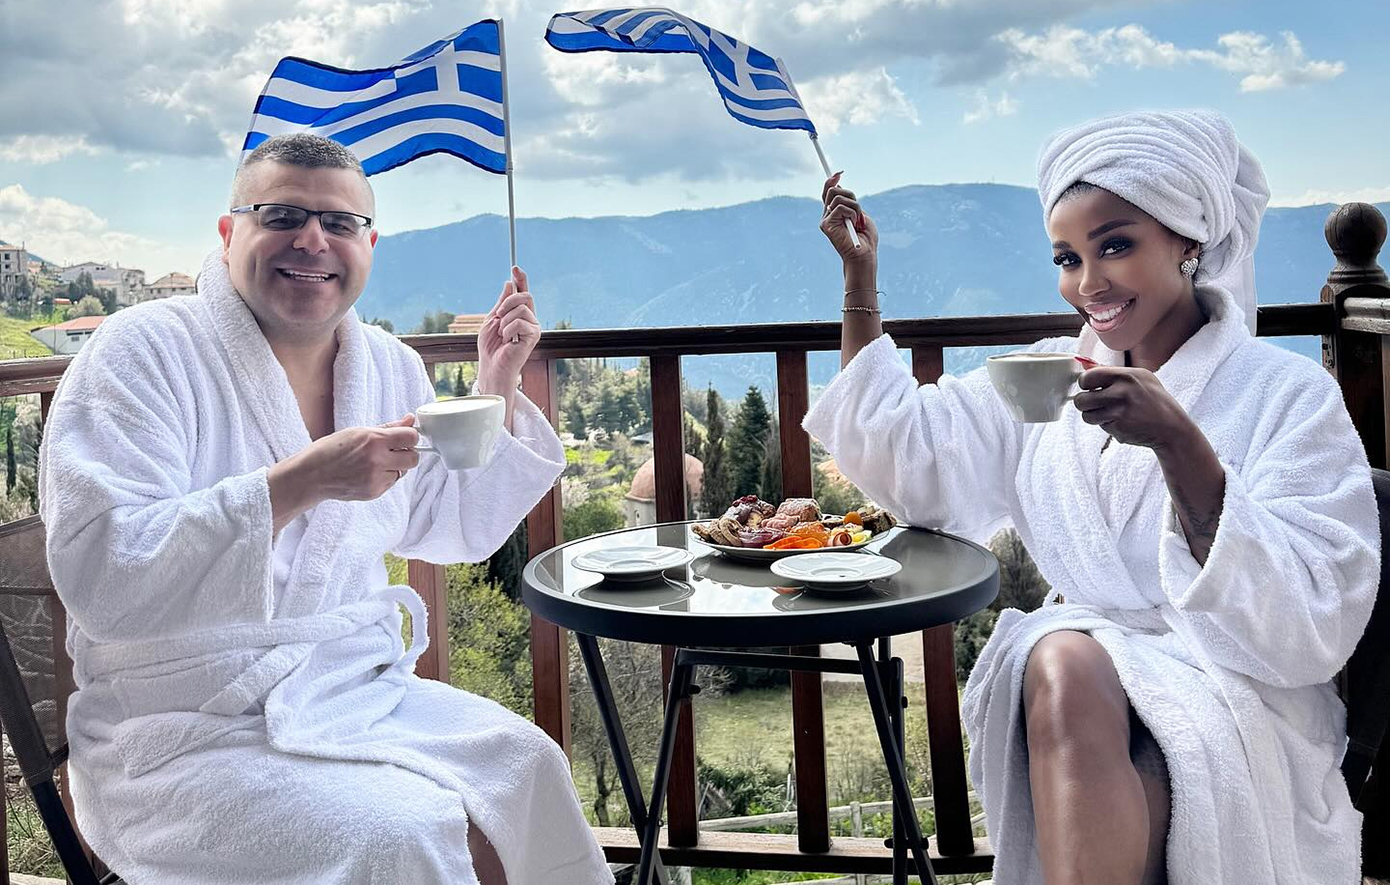 Με ελληνικές σημαίες και φορώντας τα μπουρνούζια τους ευχήθηκαν «καλή Σαρακοστή» η Ελίζαμπεθ Ελέτσι και ο Νεκτάριος Λεμονίδης